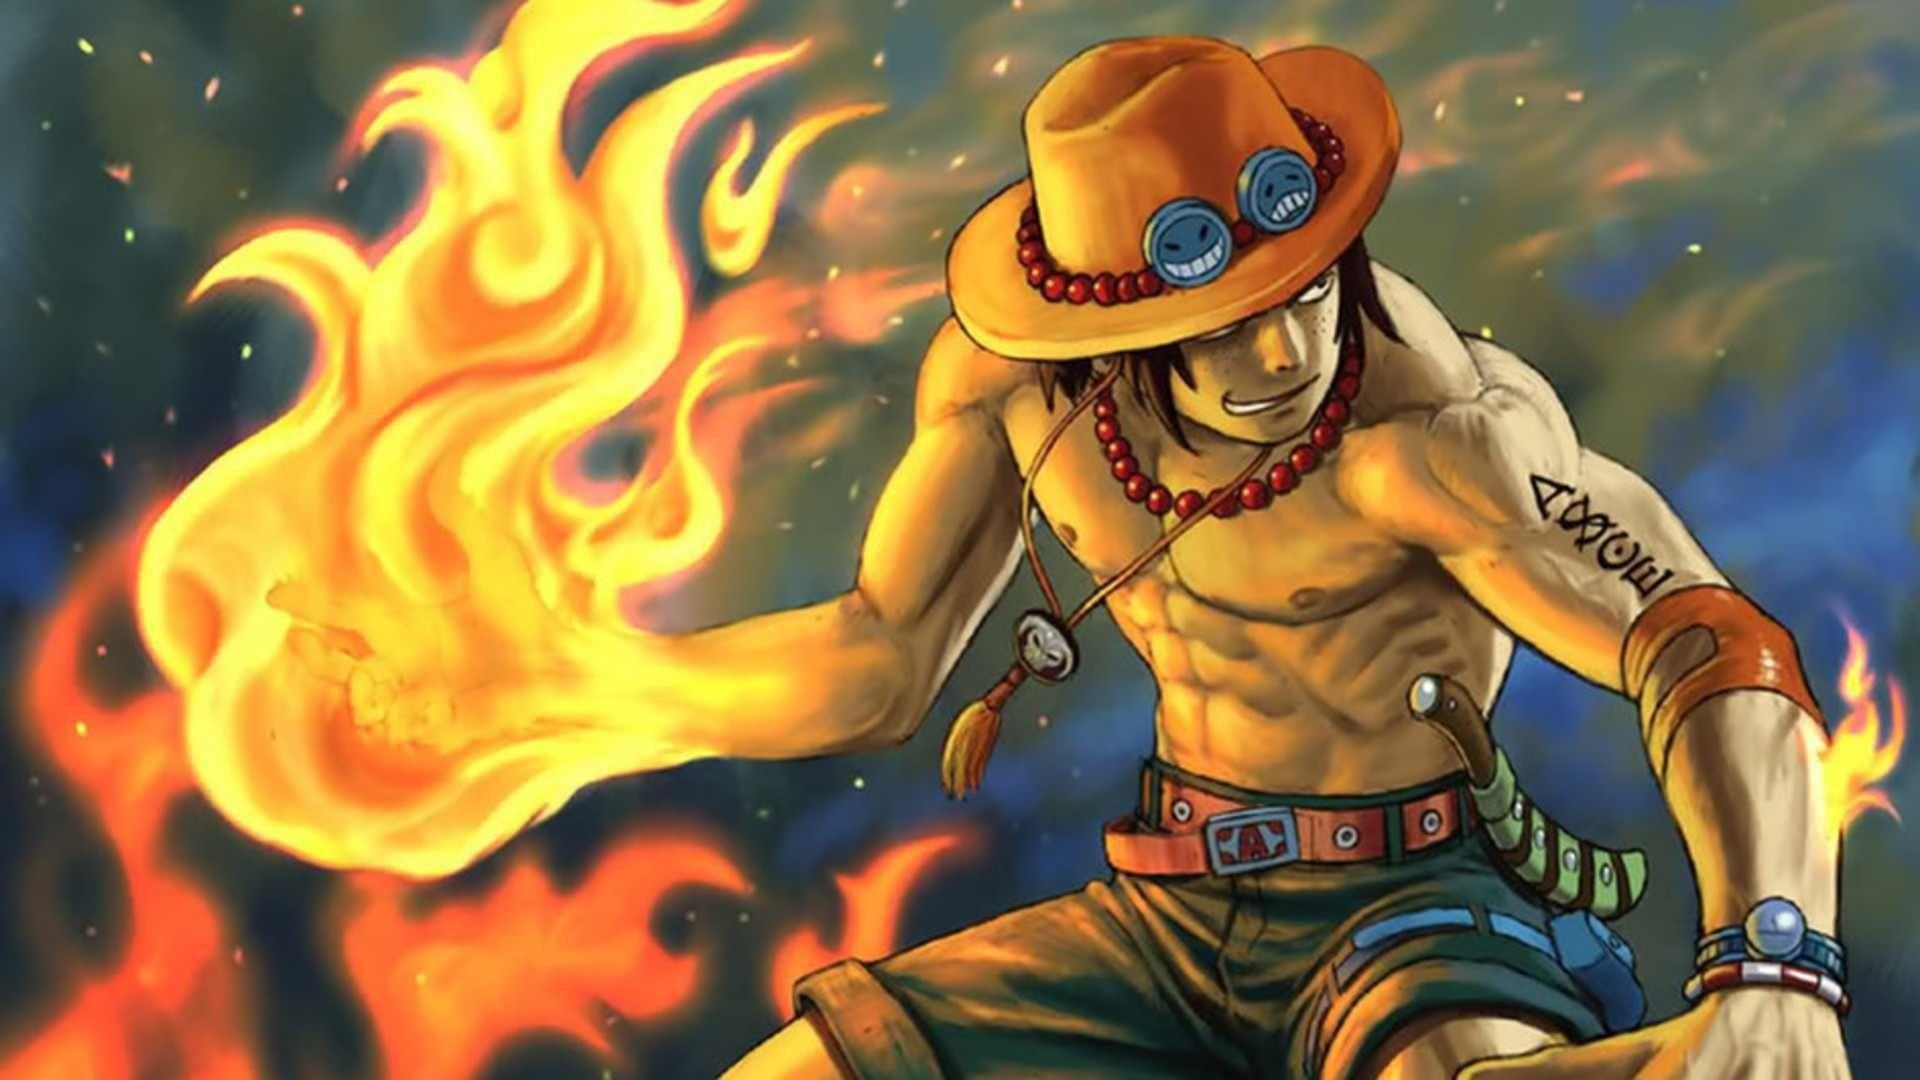 Hình nền Ace One Piece: Hình nền Ace One Piece đầy sức cuốn hút và đầy cảm xúc. Với hình ảnh sống động, bộ sưu tập hình nền Ace One Piece sẽ giúp bạn tận hưởng sự đam mê và sức mạnh của những chiến binh hải tặc. Hãy cập nhật ngay những hình ảnh đẹp nhất của Ace để cho màn hình của bạn thêm phần sinh động.